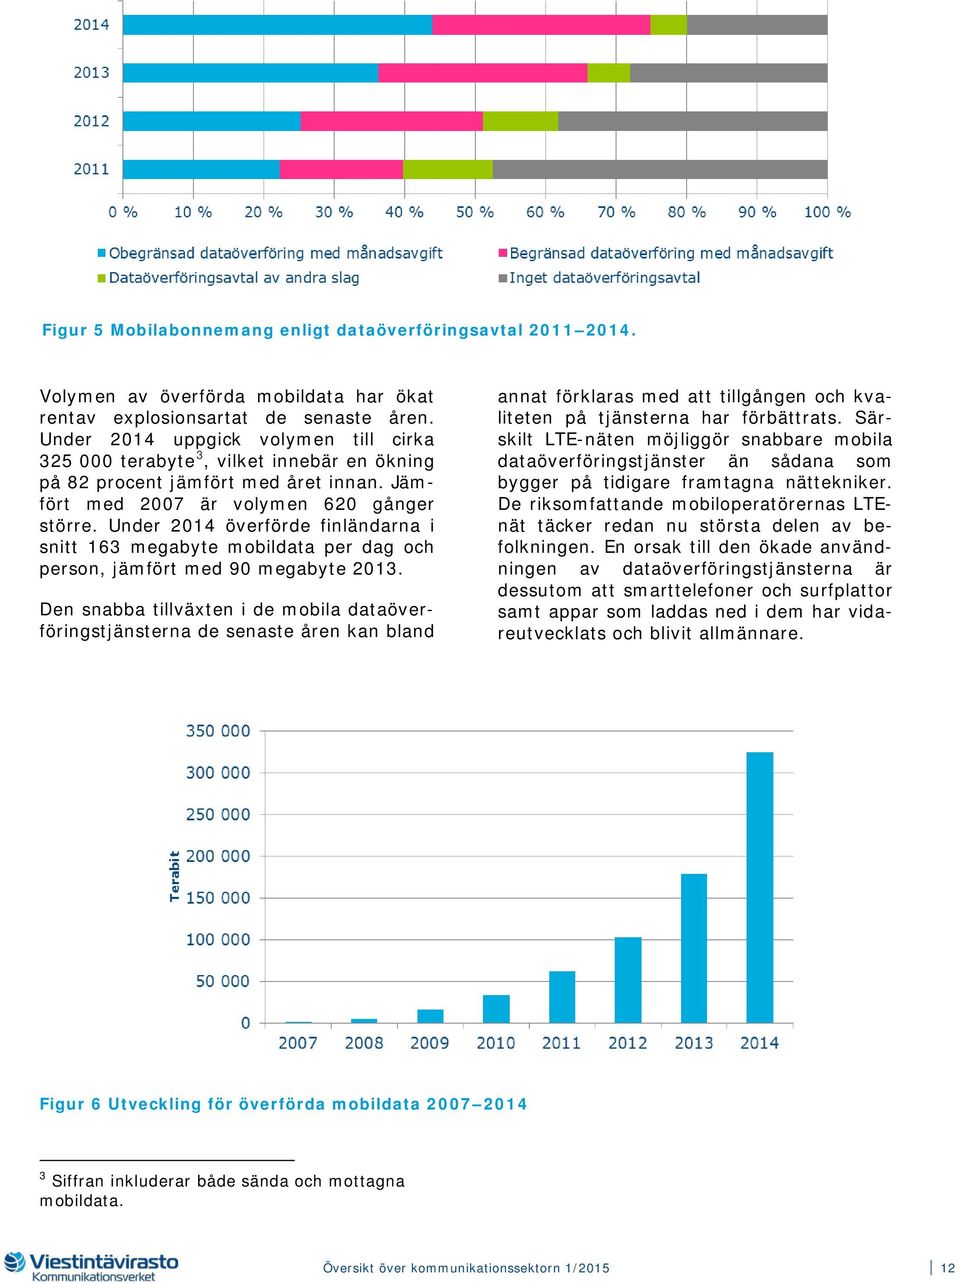 Under 2014 överförde finländarna i snitt 163 megabyte mobildata per dag och person, jämfört med 90 megabyte 2013.